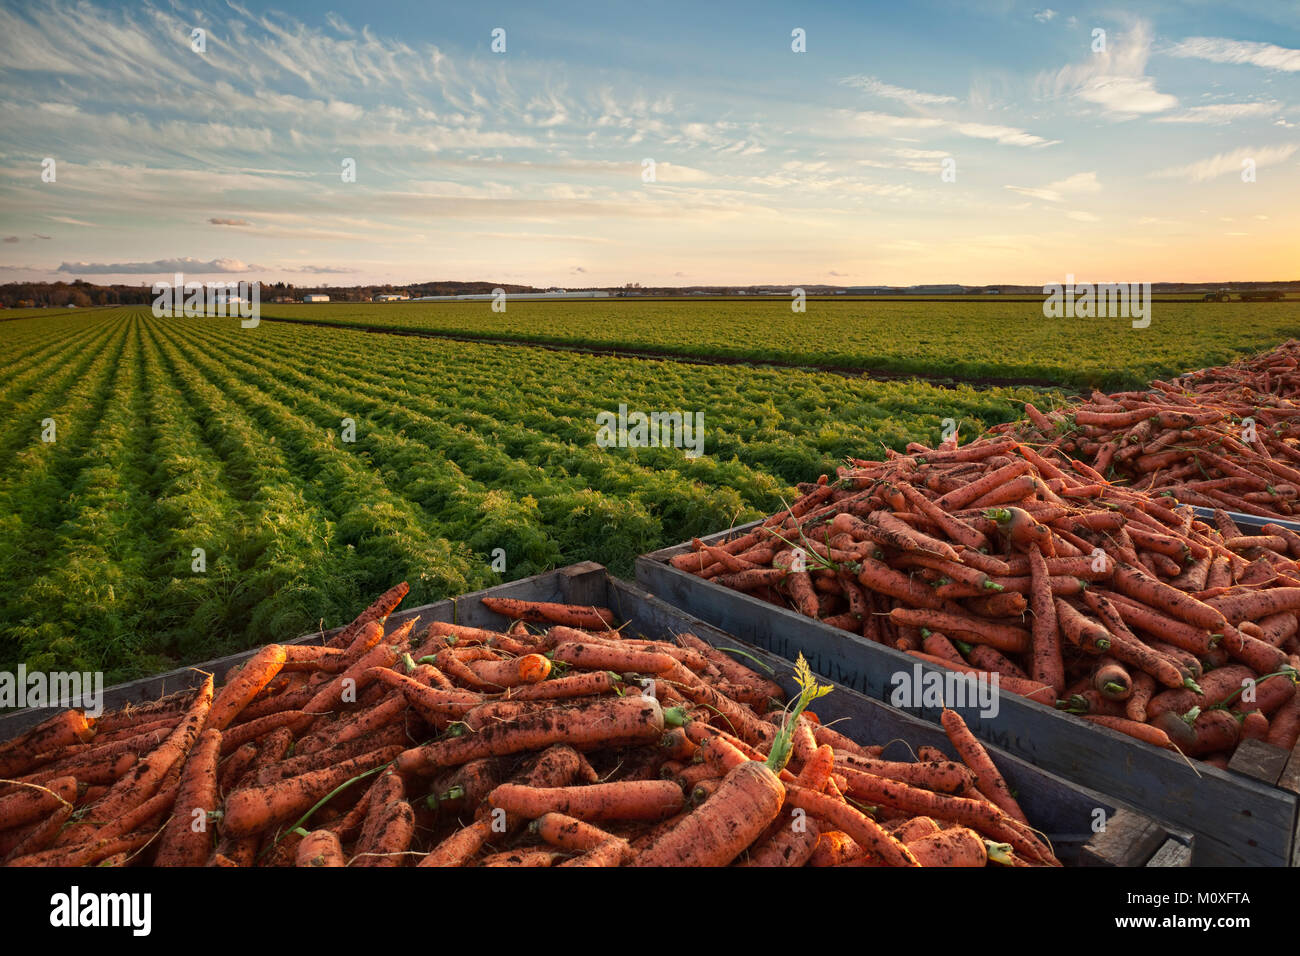 Caisses de carottes avec un champ de carottes dans l'arrière-plan. Holland Marsh à Bradford West Gwillimbury, Ontario, Canada. Banque D'Images